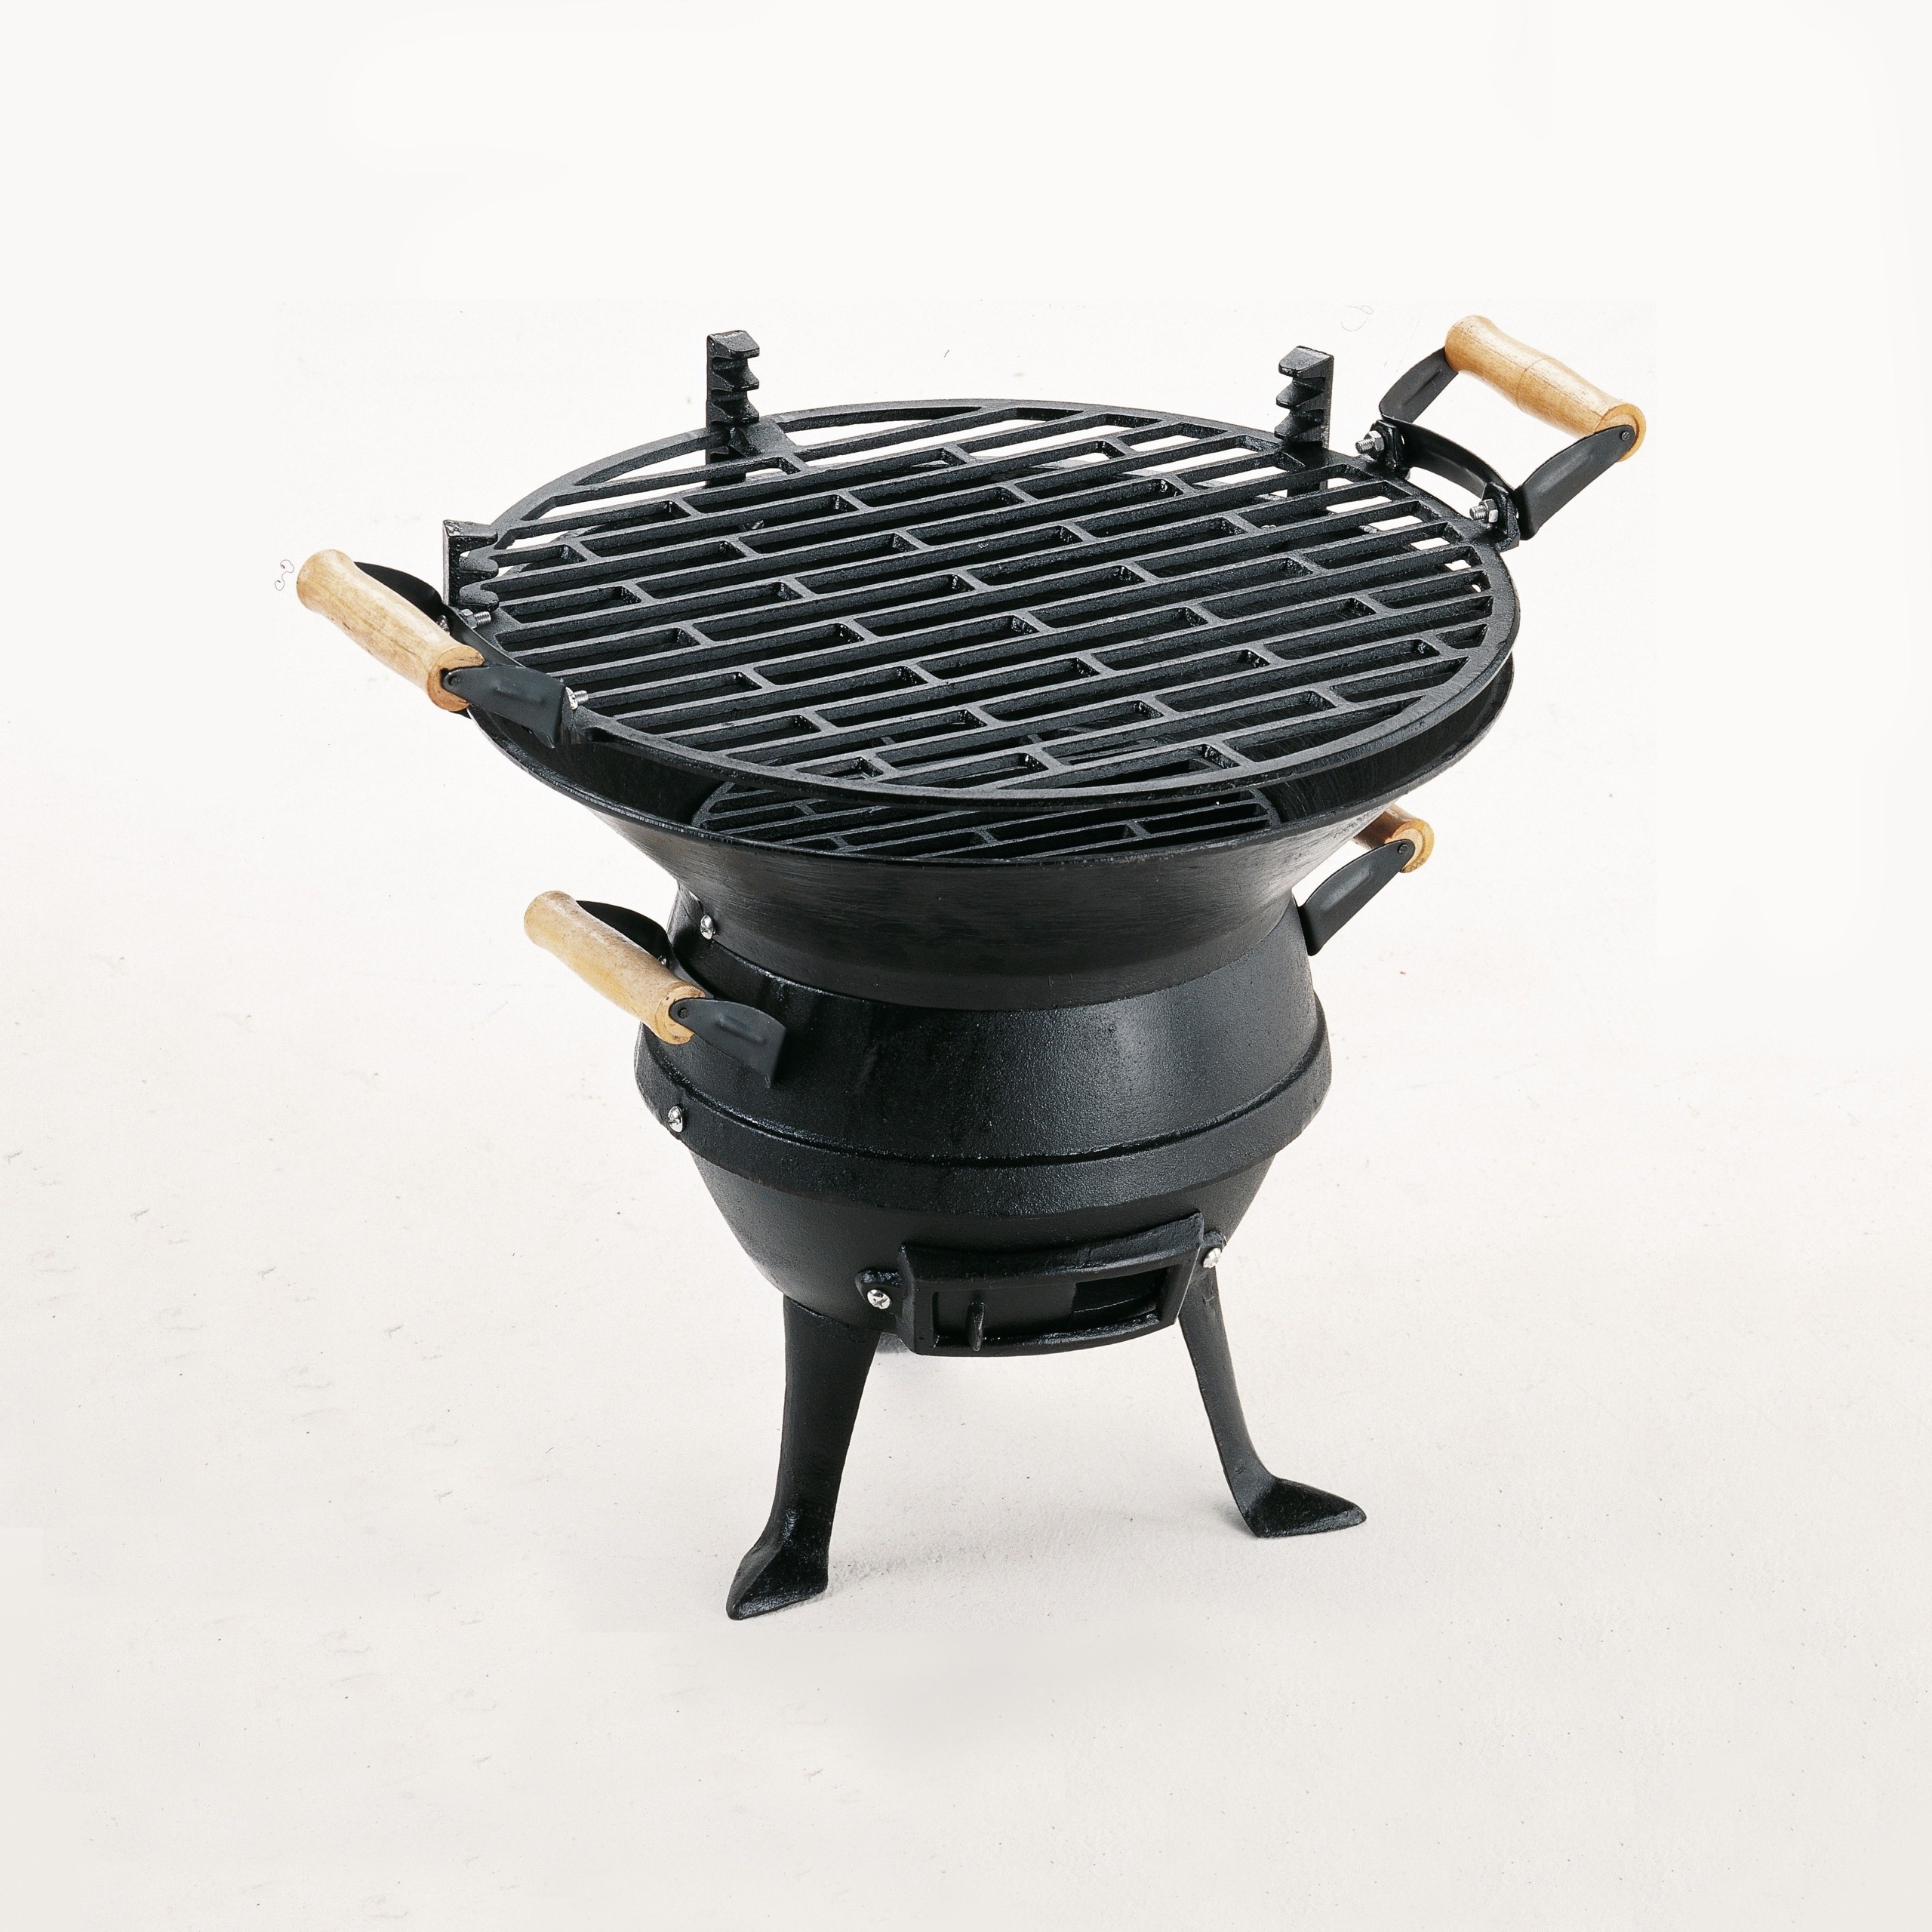 https://foter.com/photos/title/cast-iron-outdoor-grill.jpg